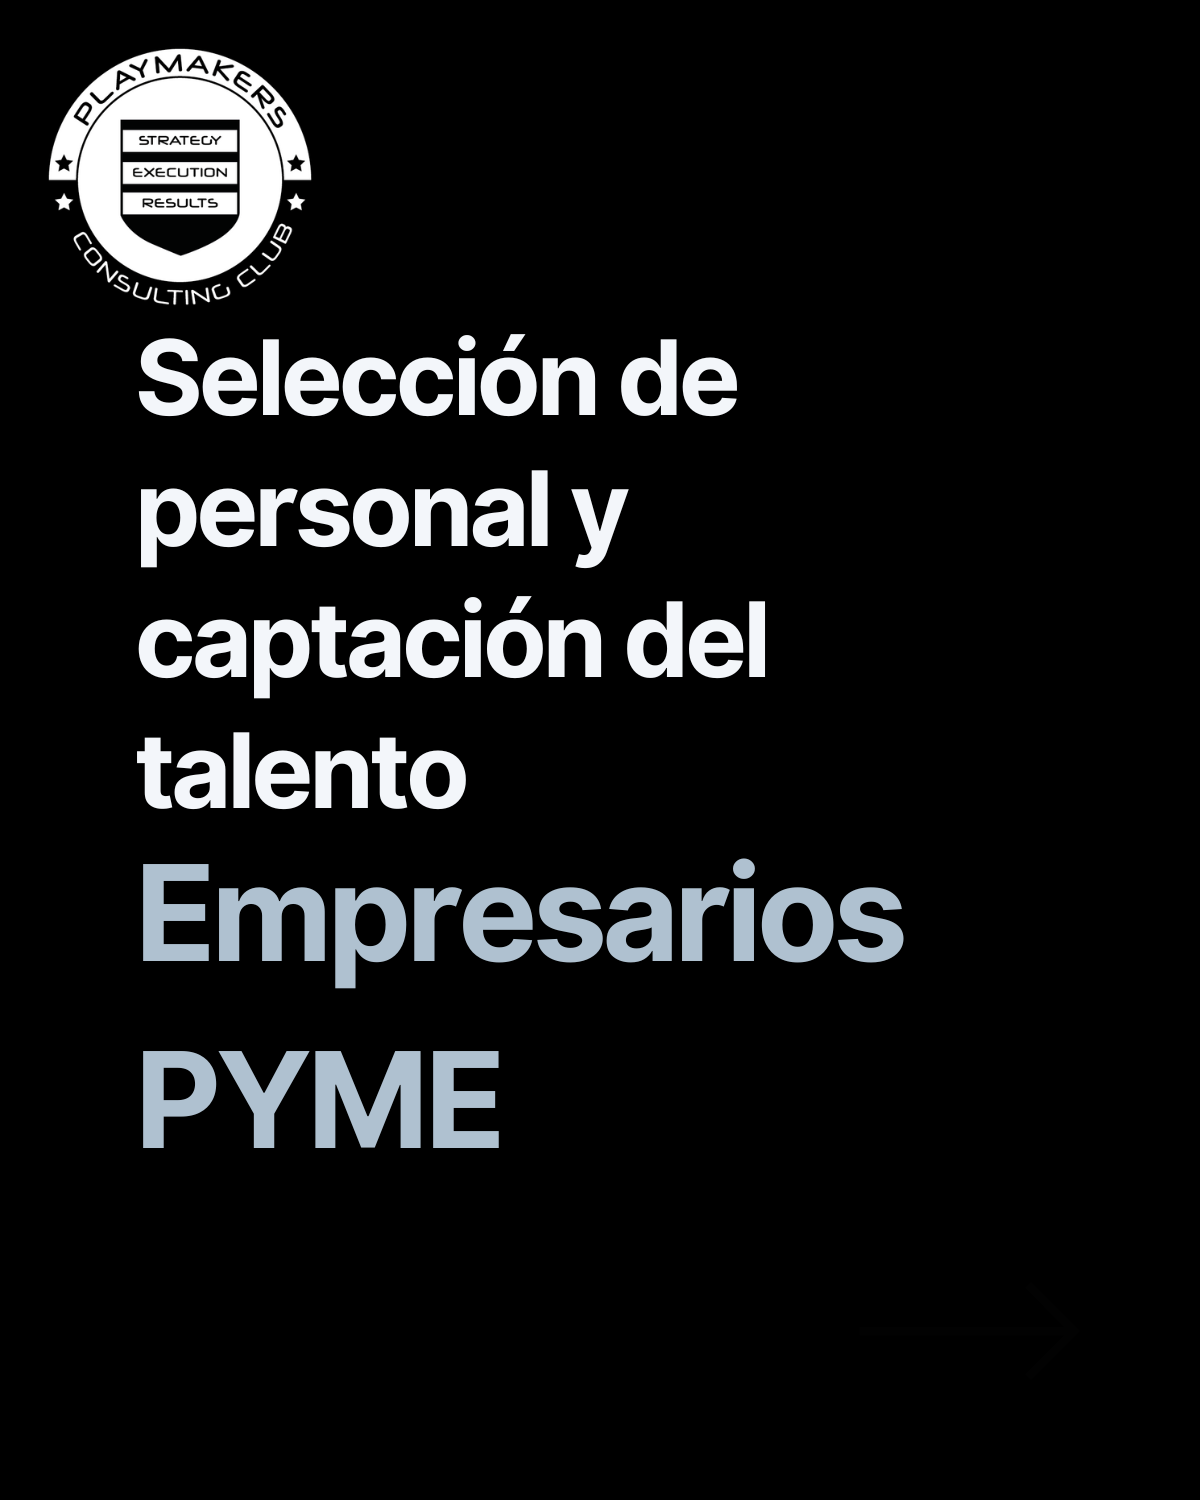 Selección de personal y captación del talento para empresarios pyme en España